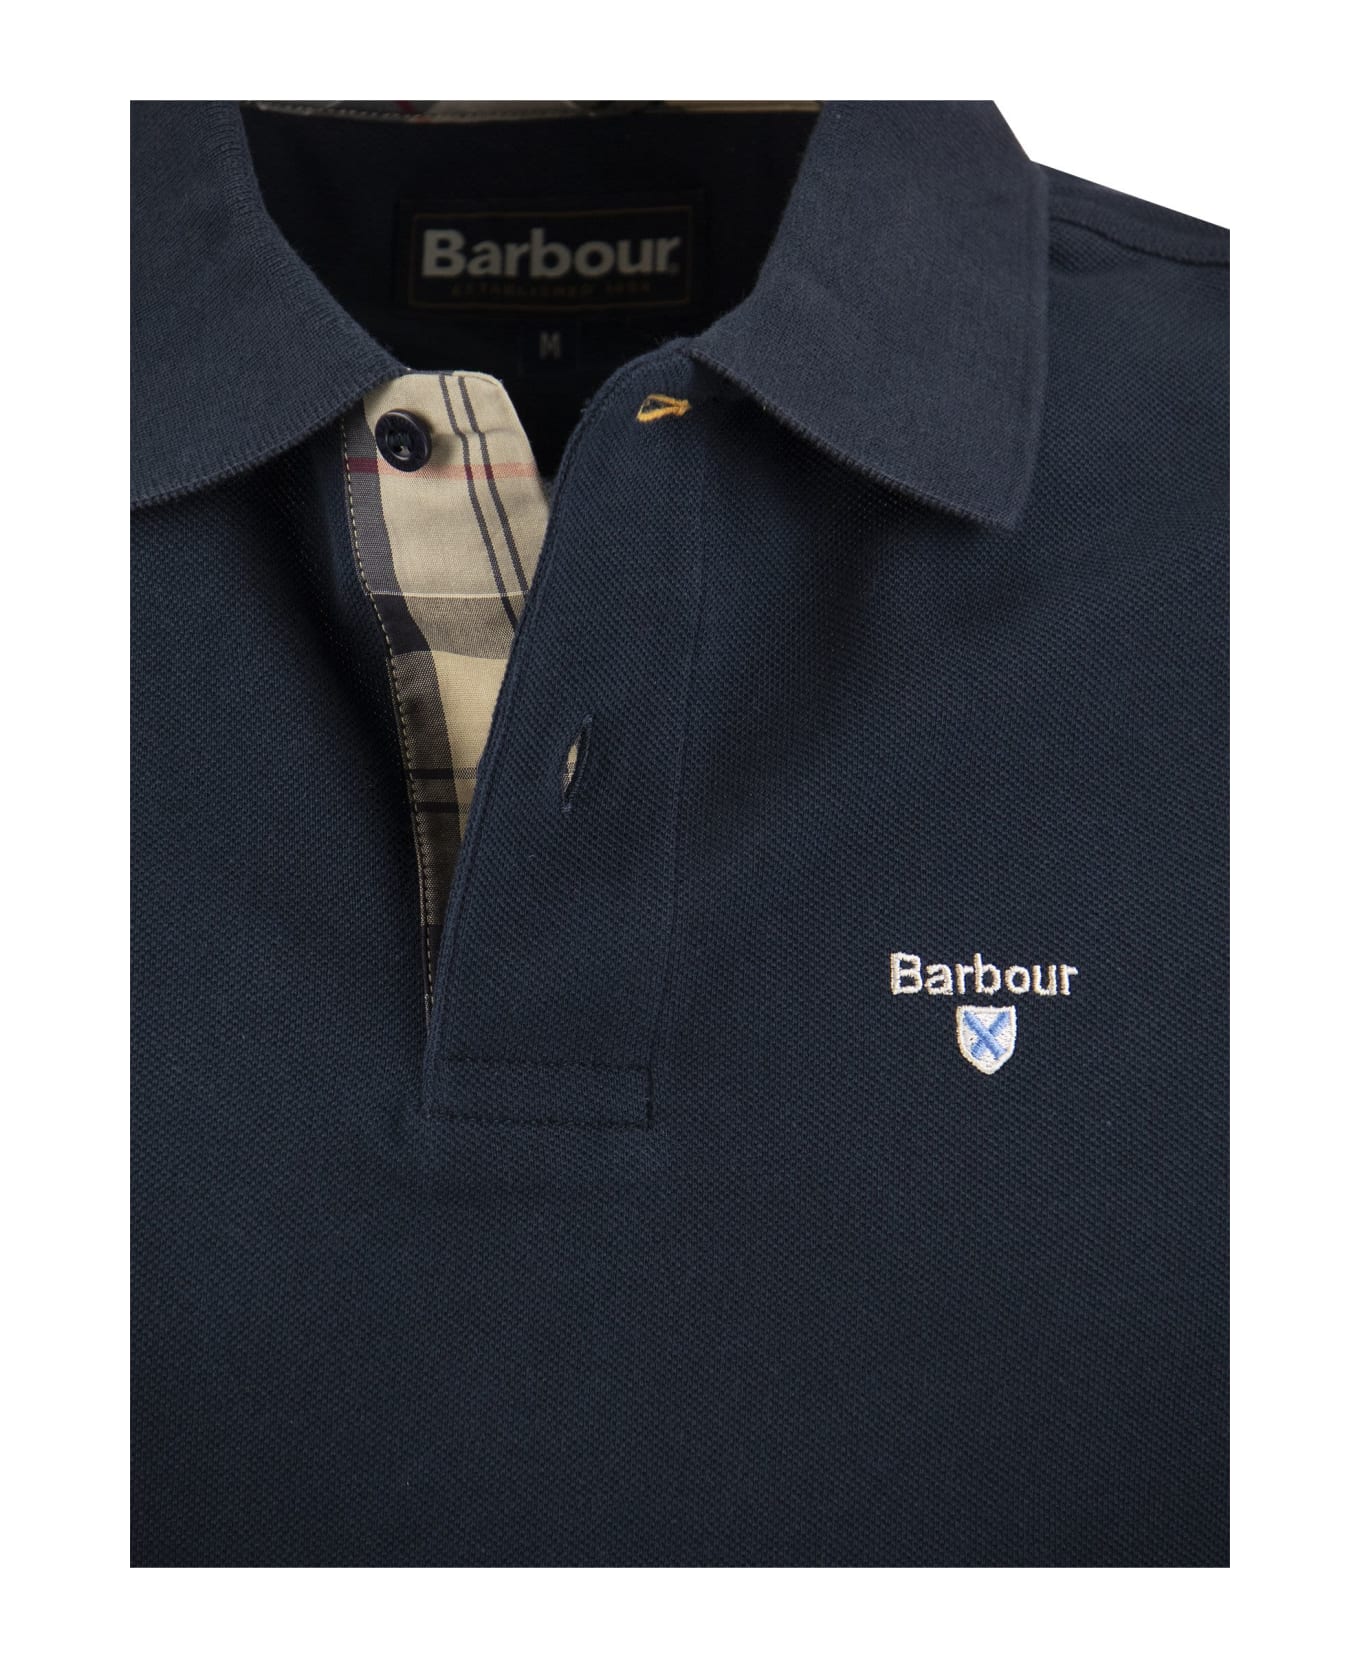 Barbour Tartan Pique Polo Shirt - Navy Blue